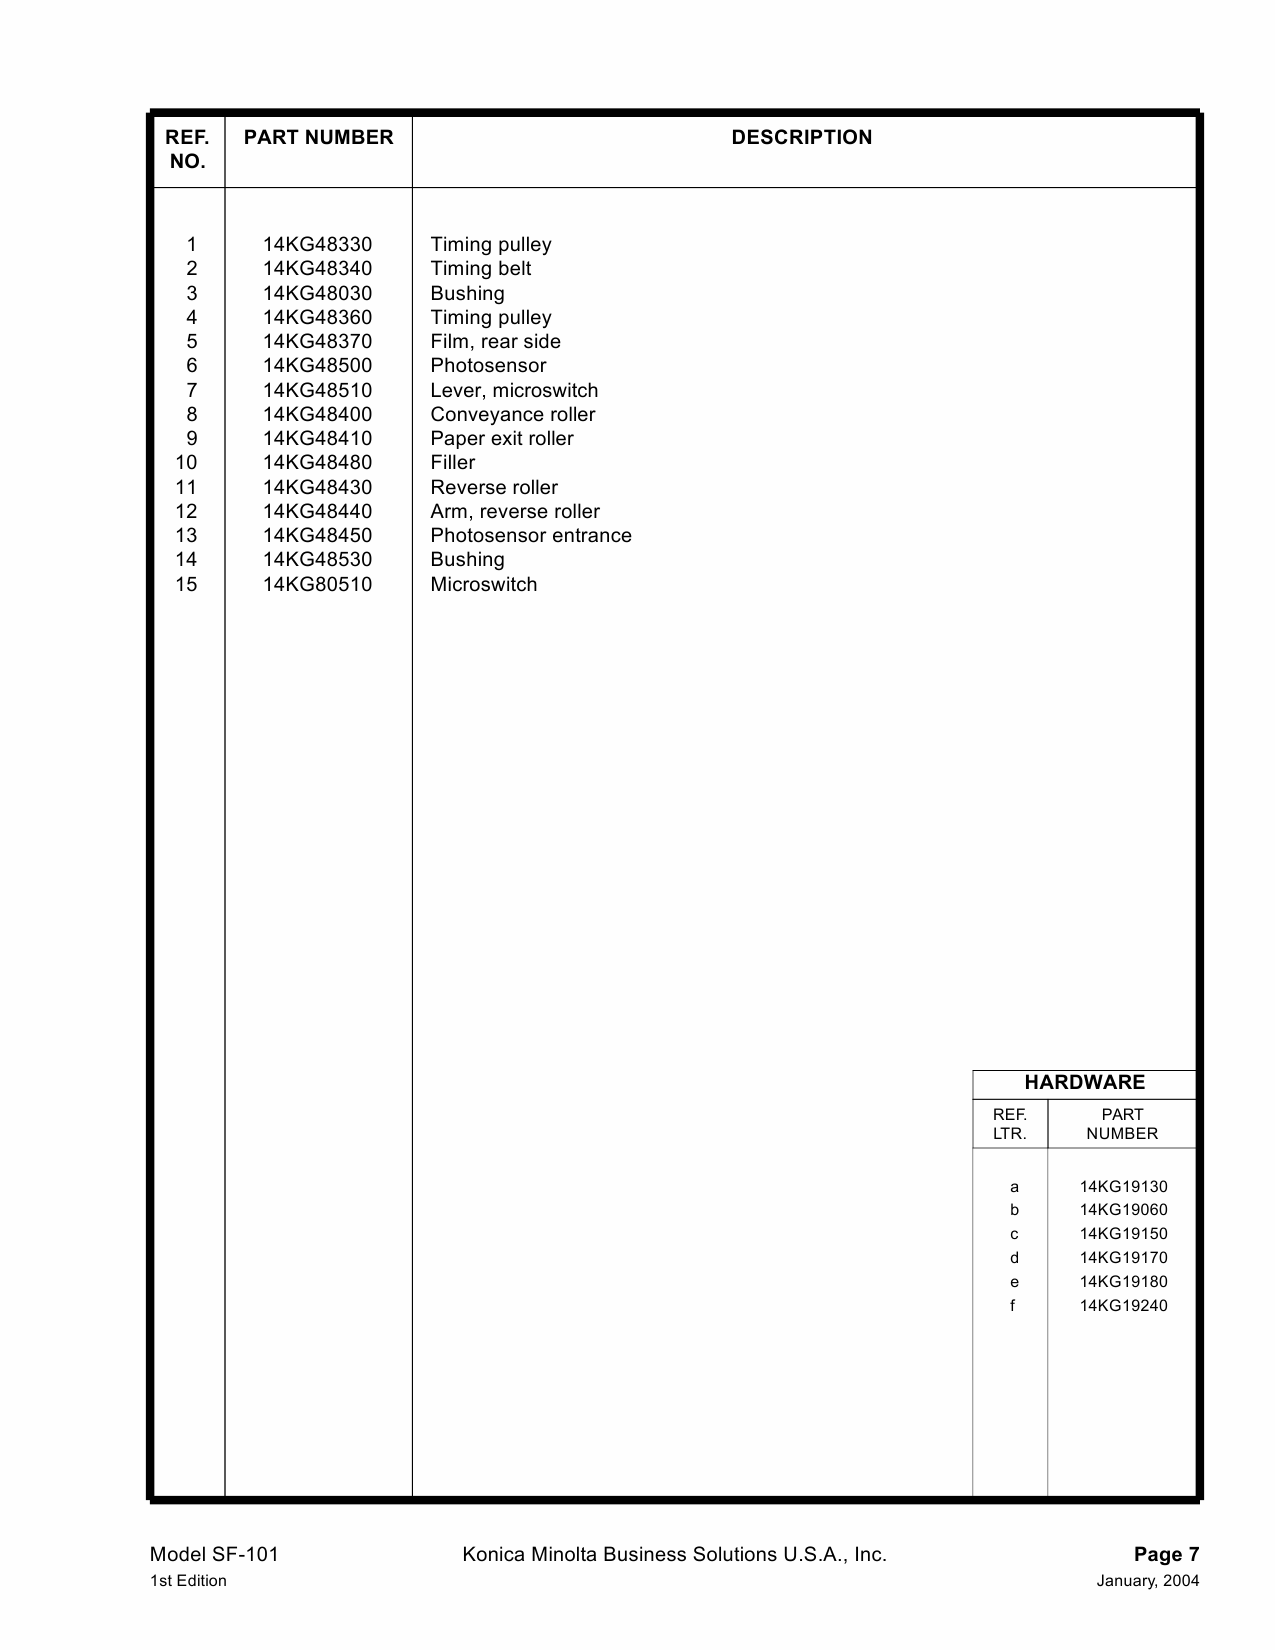 Konica-Minolta Options SF-101 Parts Manual-6